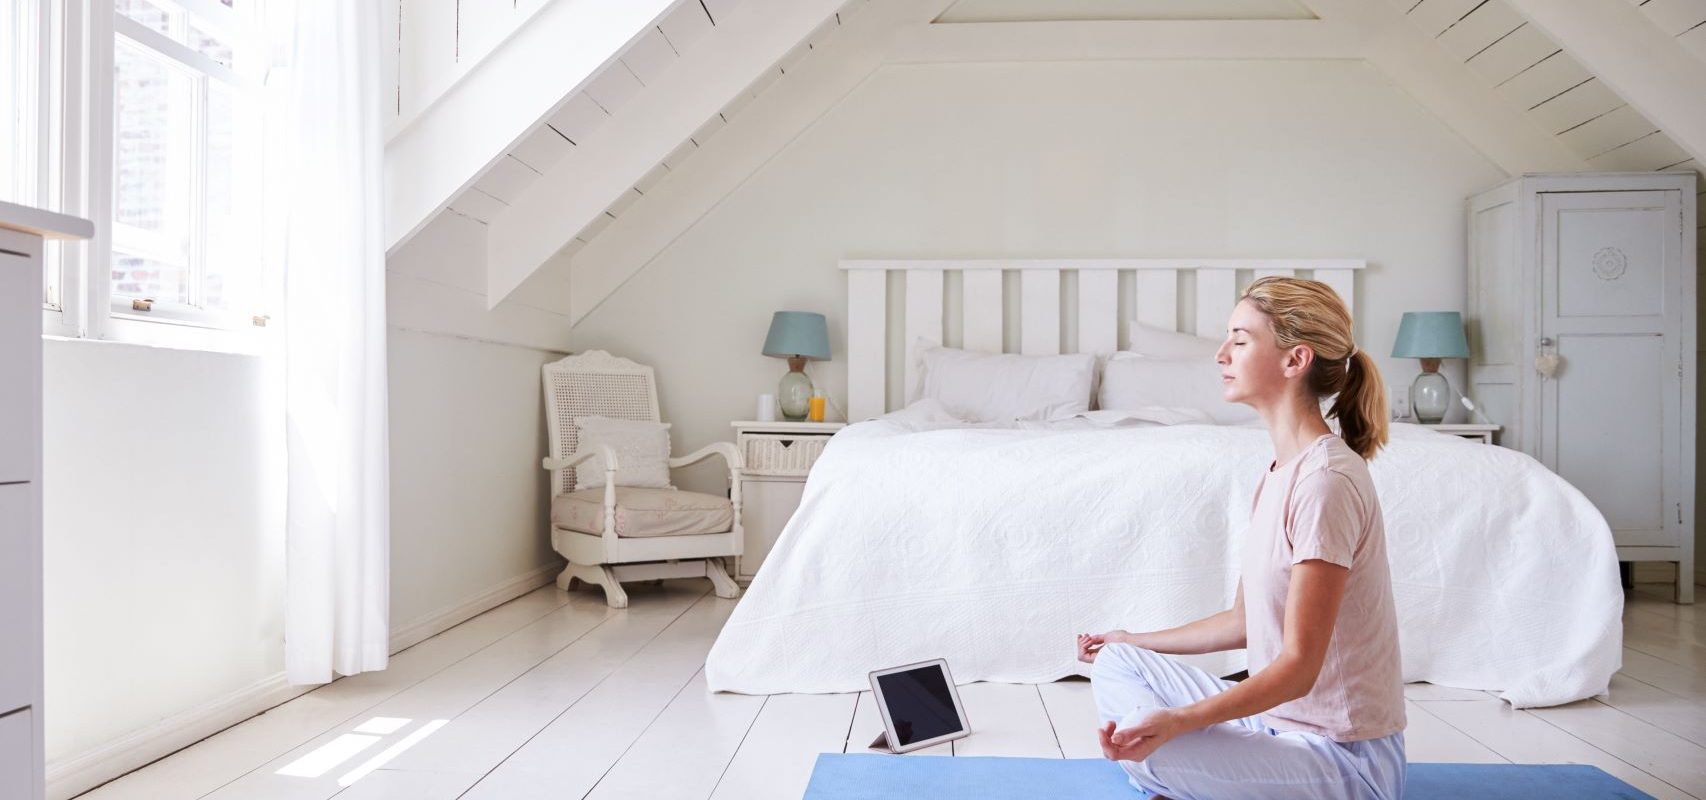 Jak działa aplikacja do medytacji? Kobieta medytuje w swojej sypialni korzystając z aplikacji na tablecie.